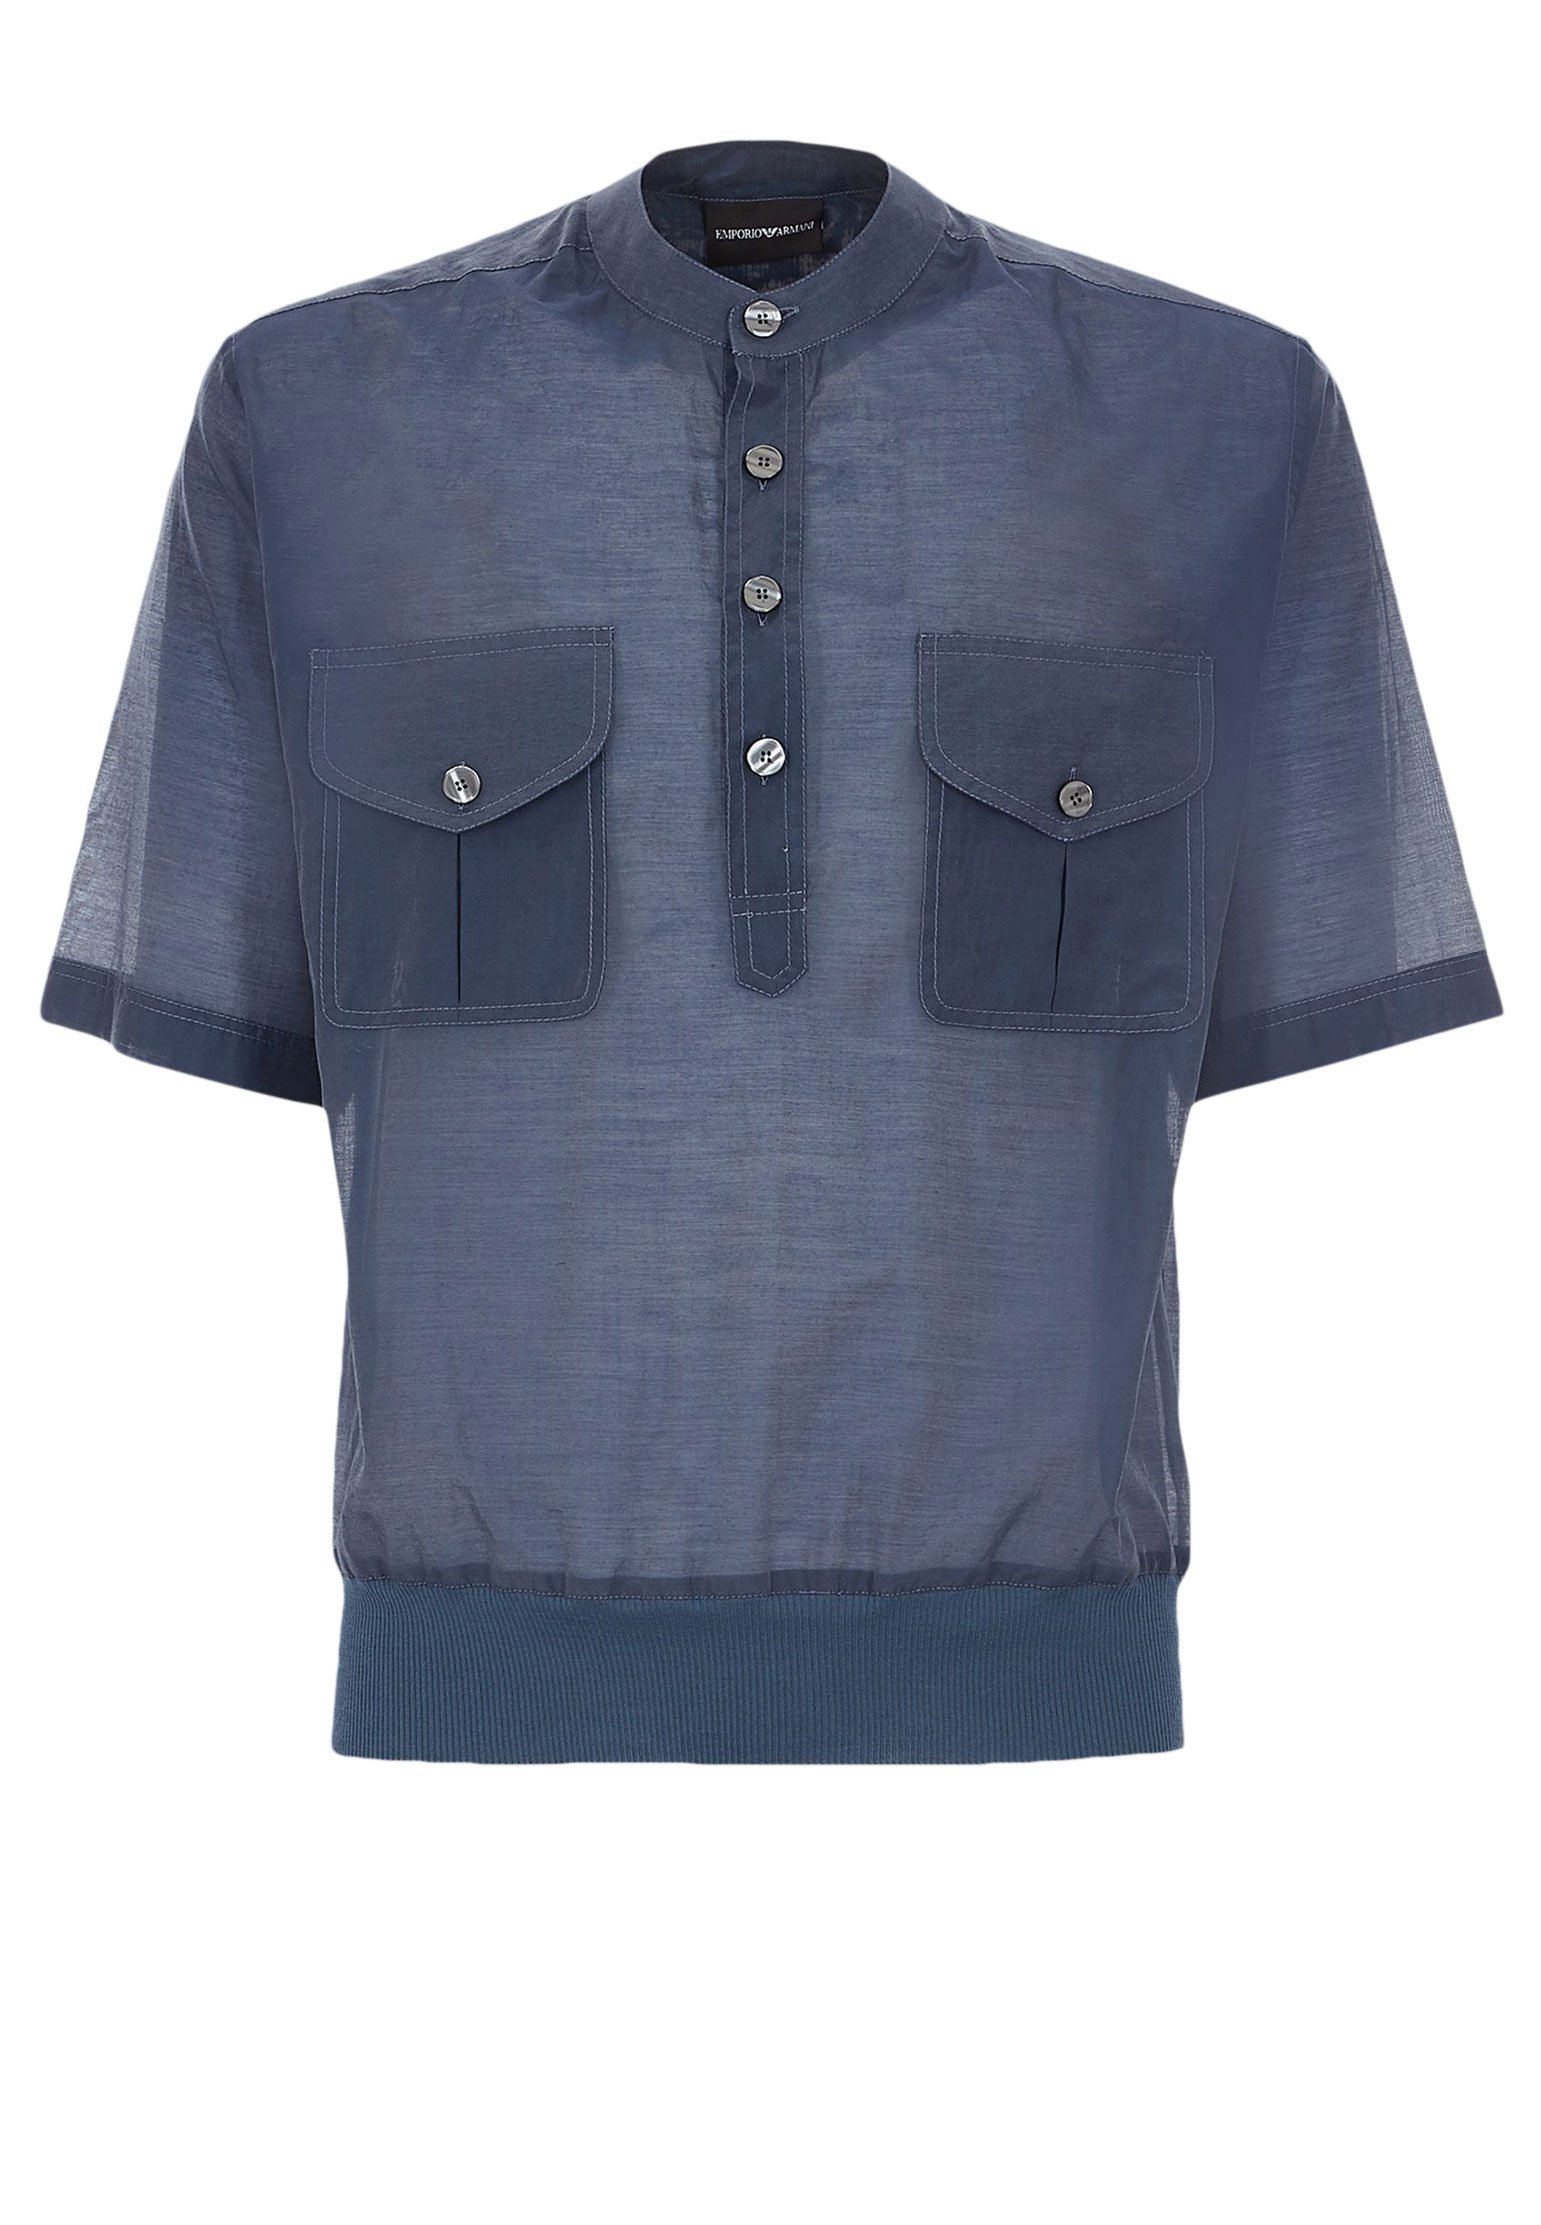 Рубашка мужская Emporio Armani 109330 синяя M